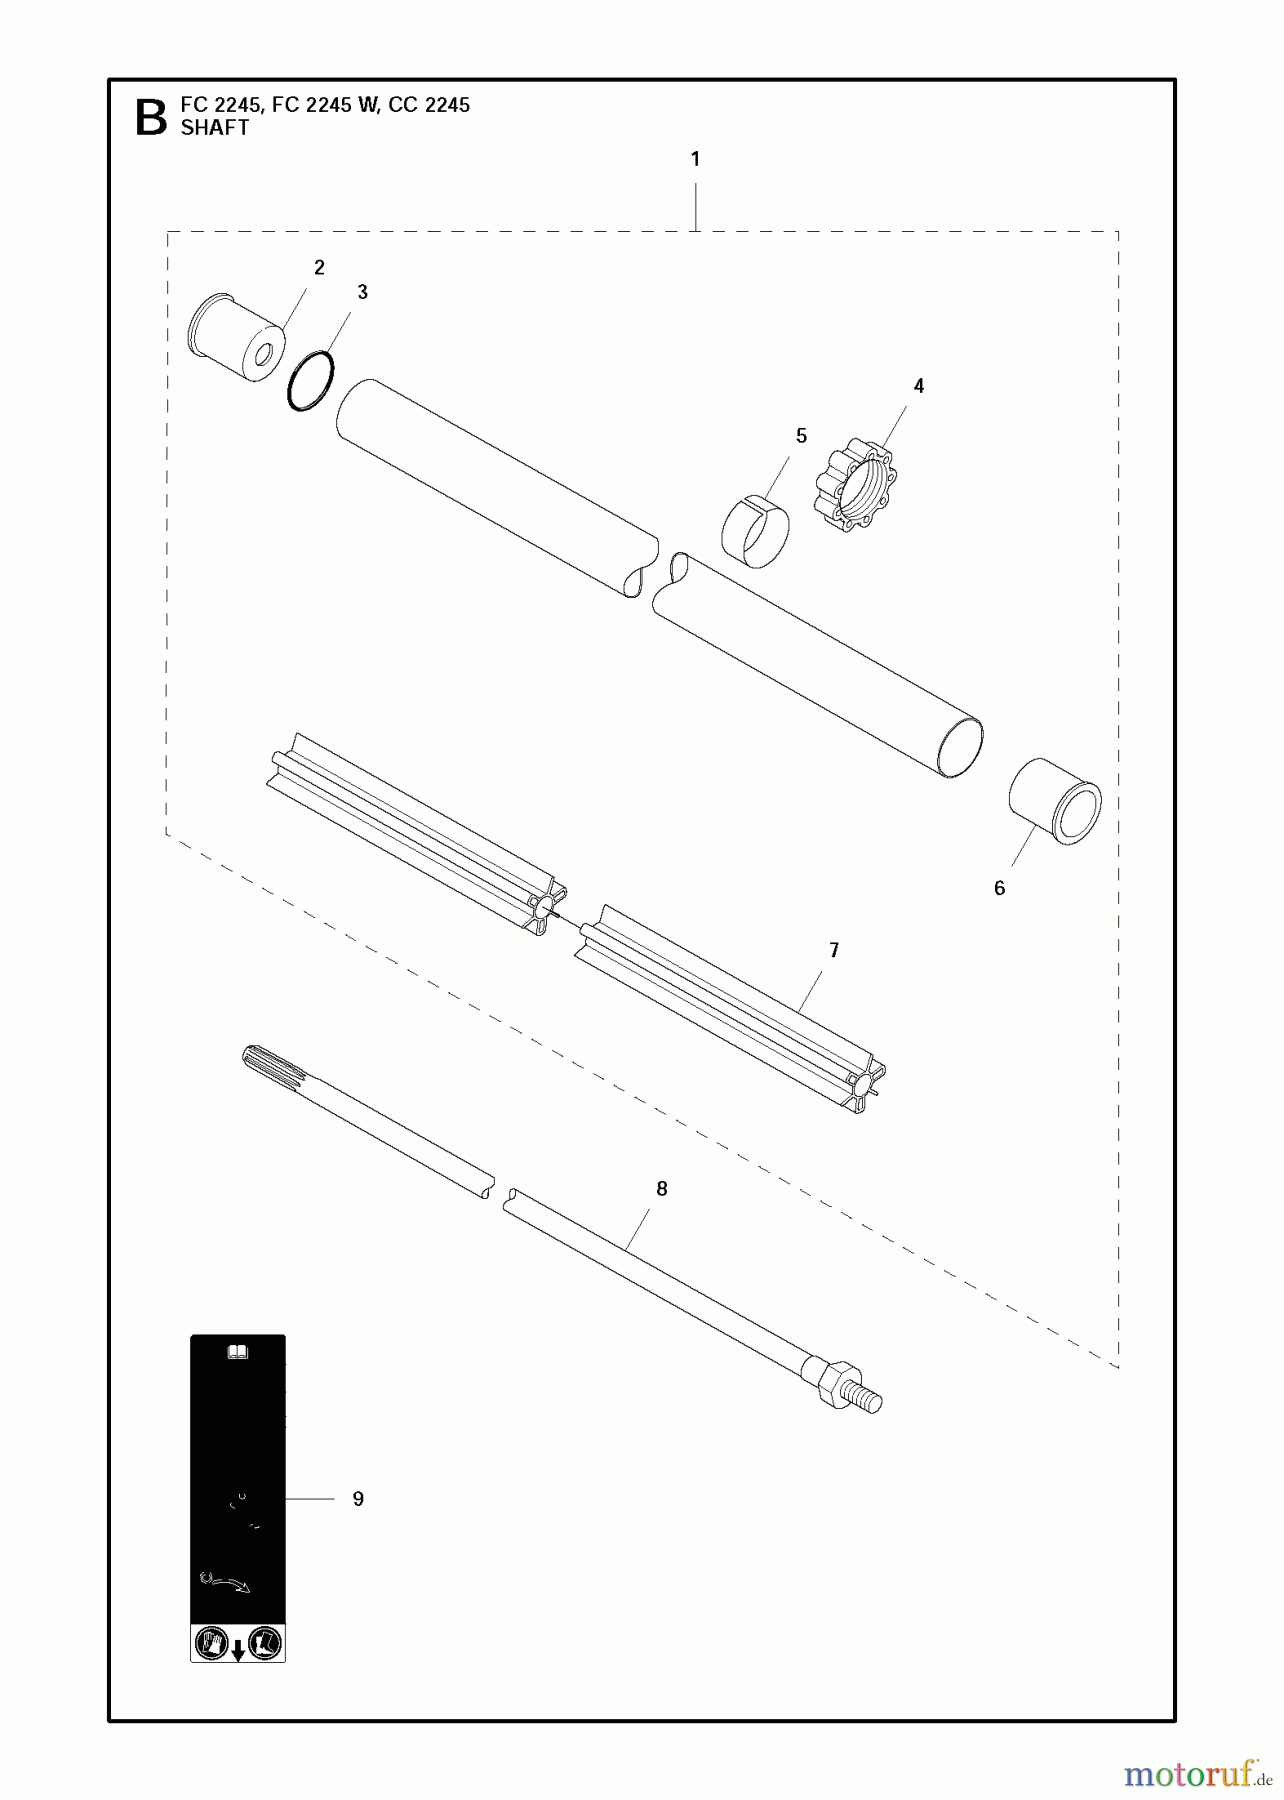  Jonsered Motorsensen, Trimmer CC2245 - Jonsered String/Brush Trimmer (2011-03) SHAFT